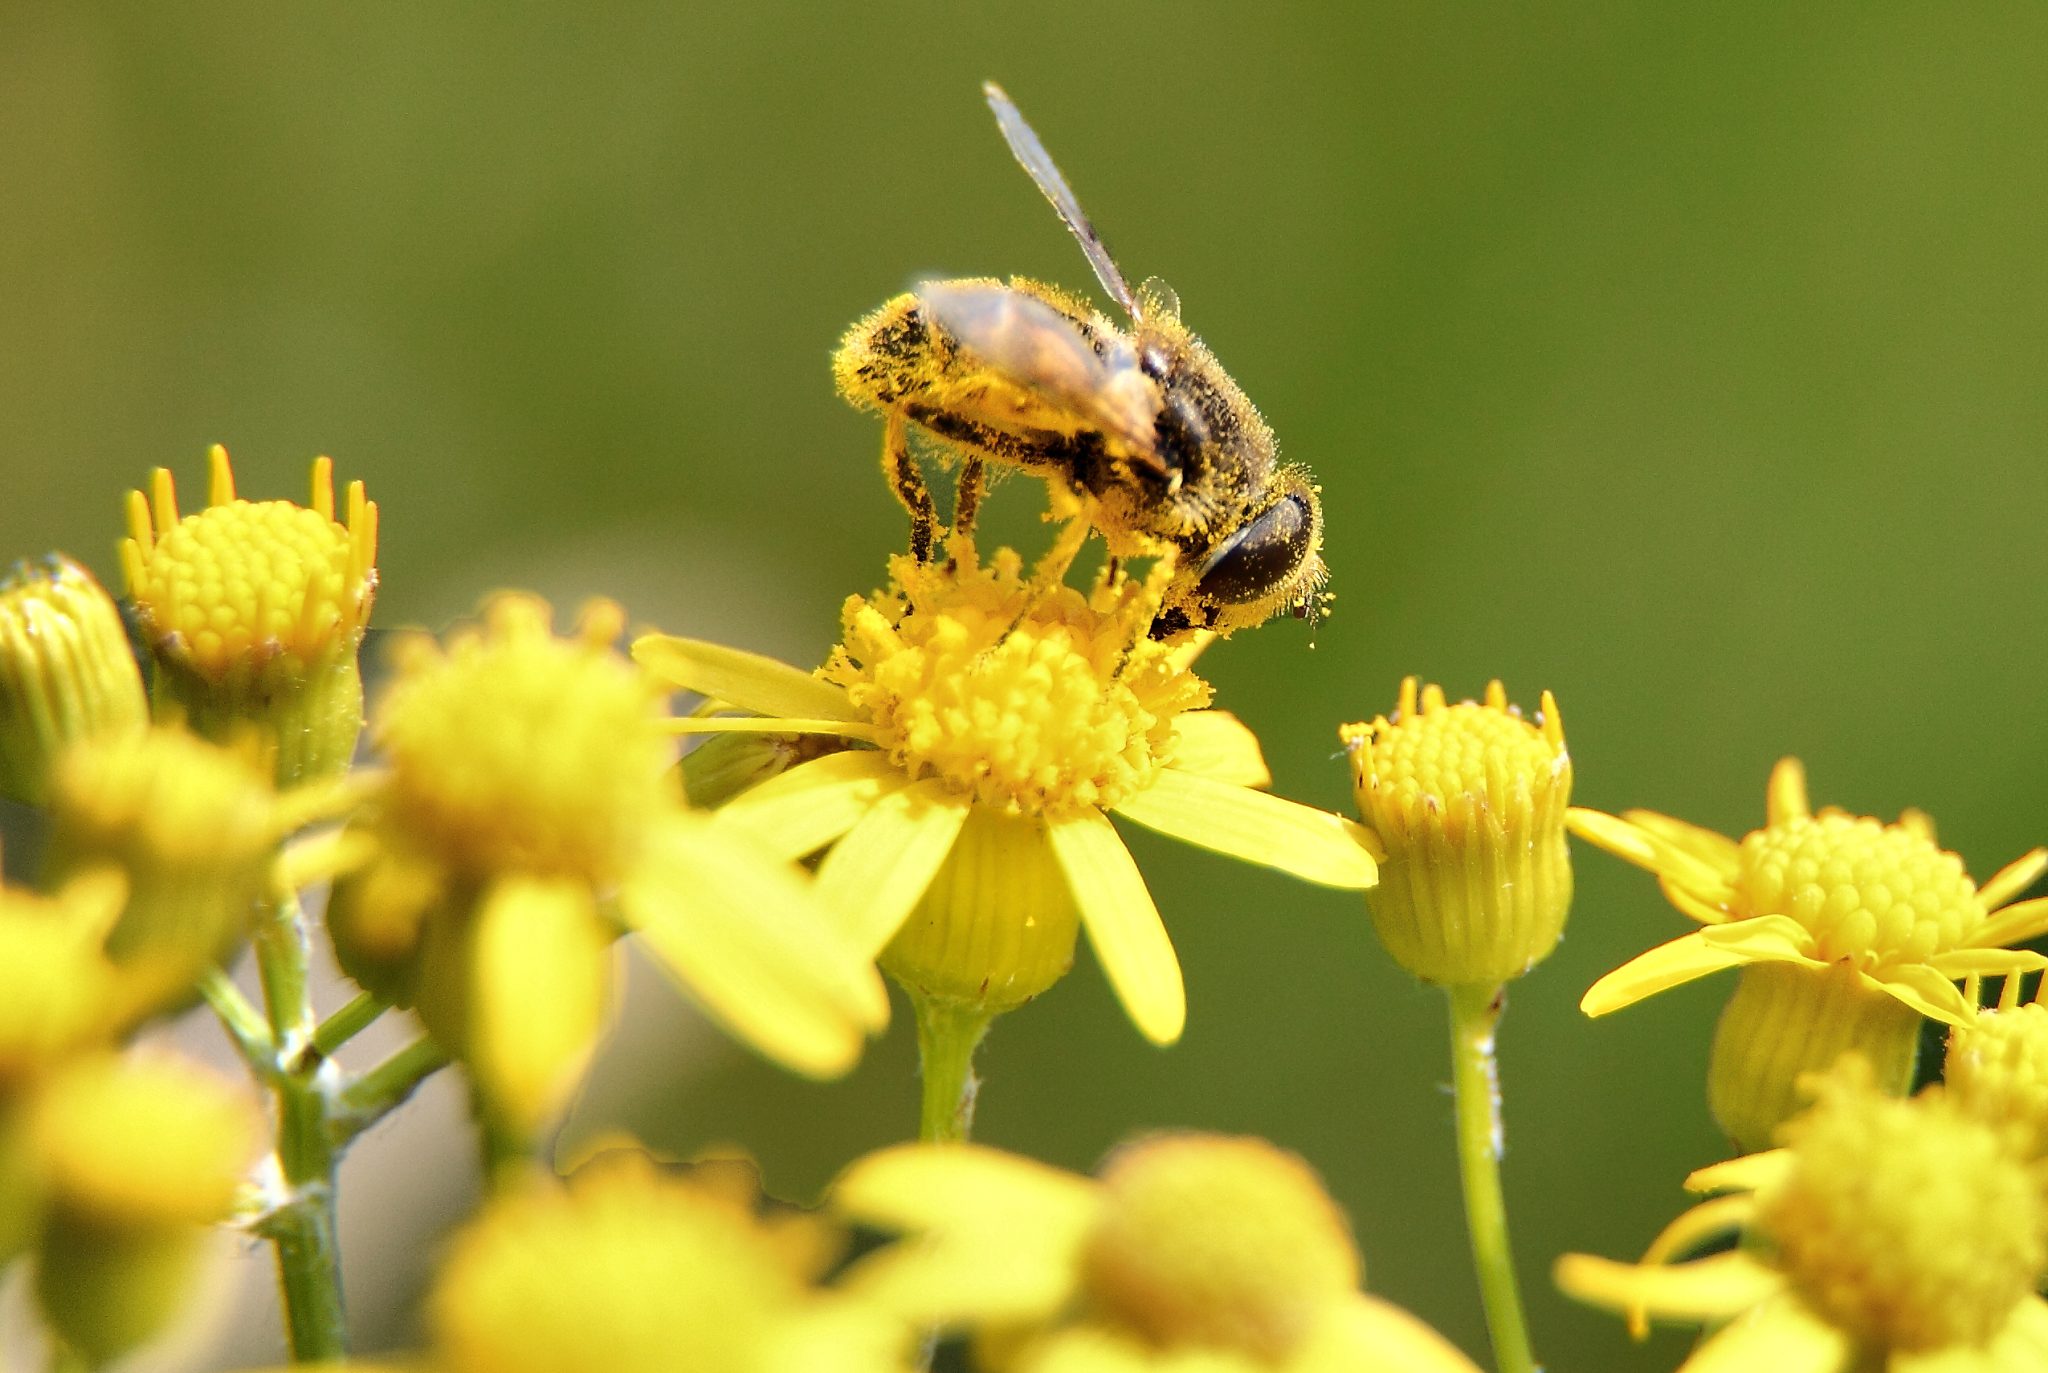 Bee collecting pollen, a major allergen